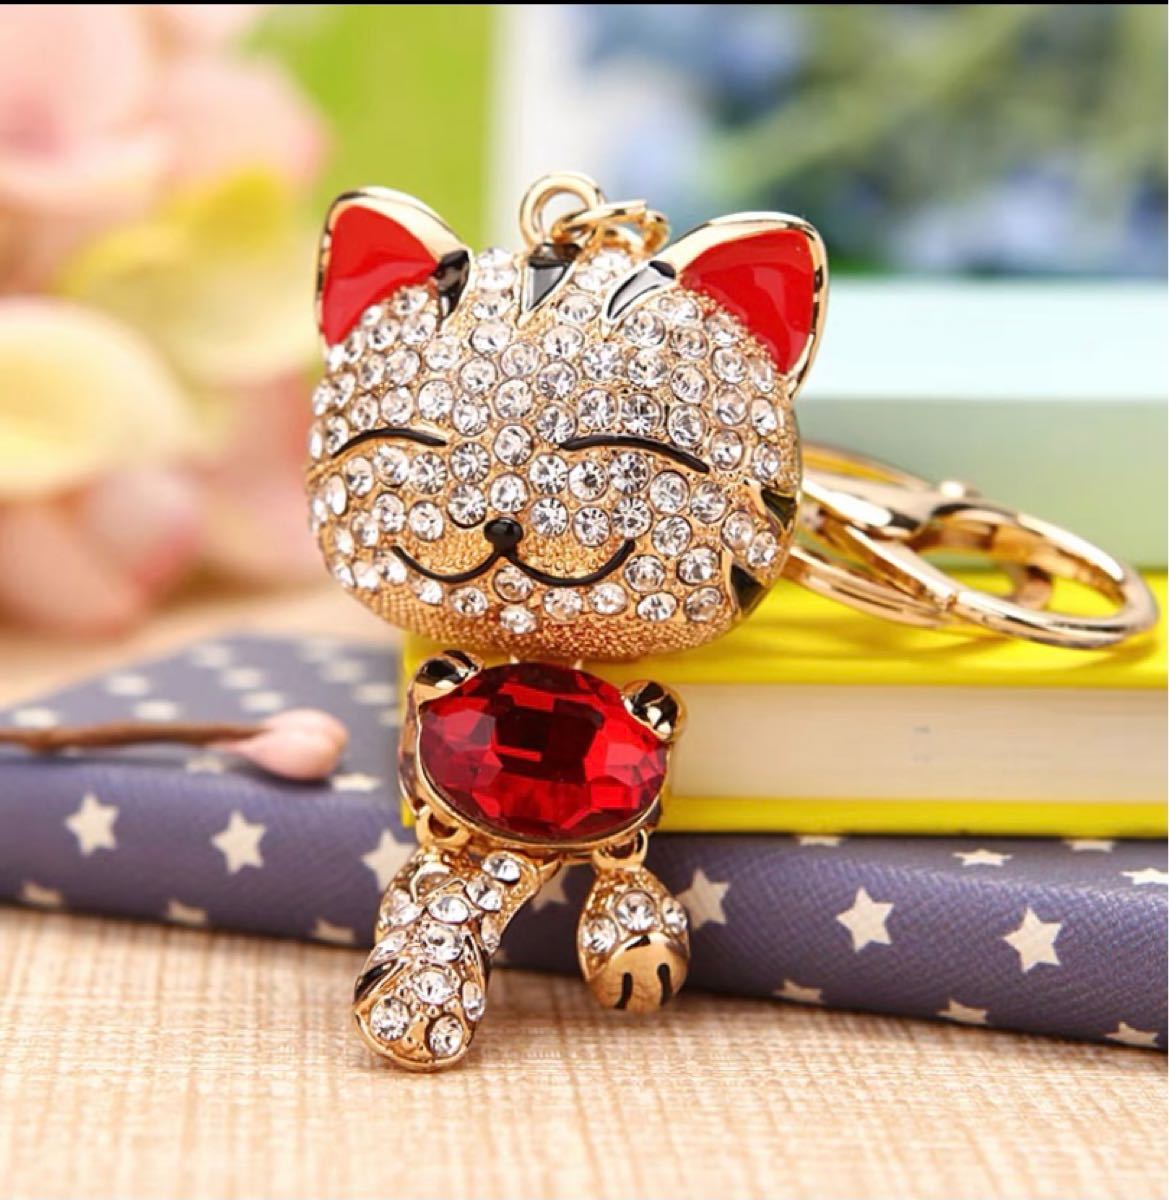 世界的に 幸運招き猫 ネコ バッグチャーム キーホルダー デコ 宝石 赤 レッド 猫好き